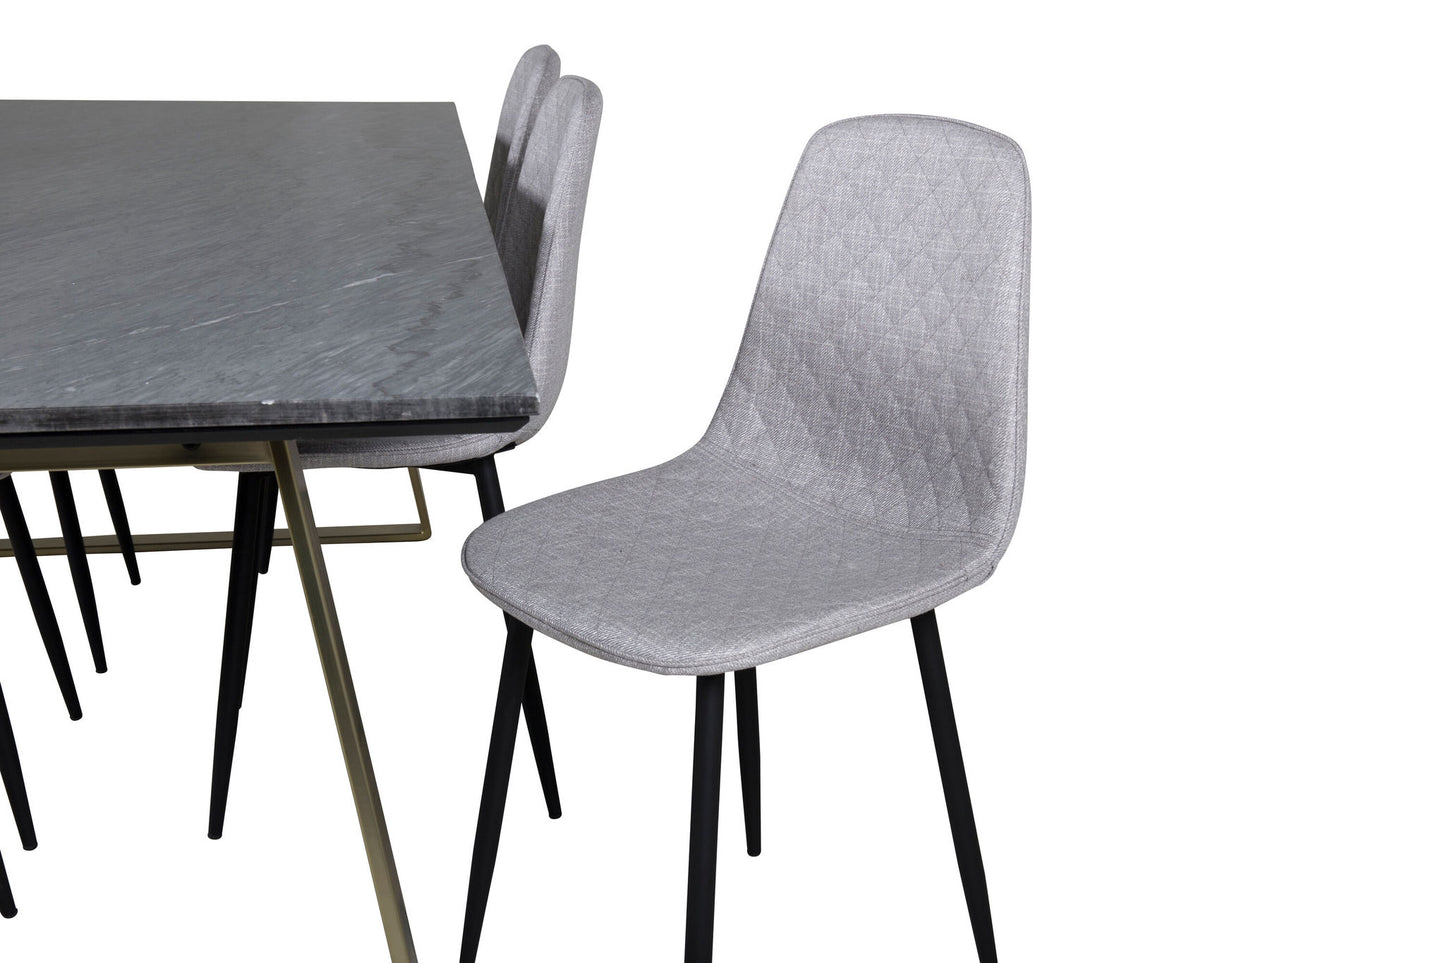 Estelle - Spisebord, 200*90*H76 - Grå / Messing+ Polar Diamond Spisebordsstol - Sorte ben - Gråt stof